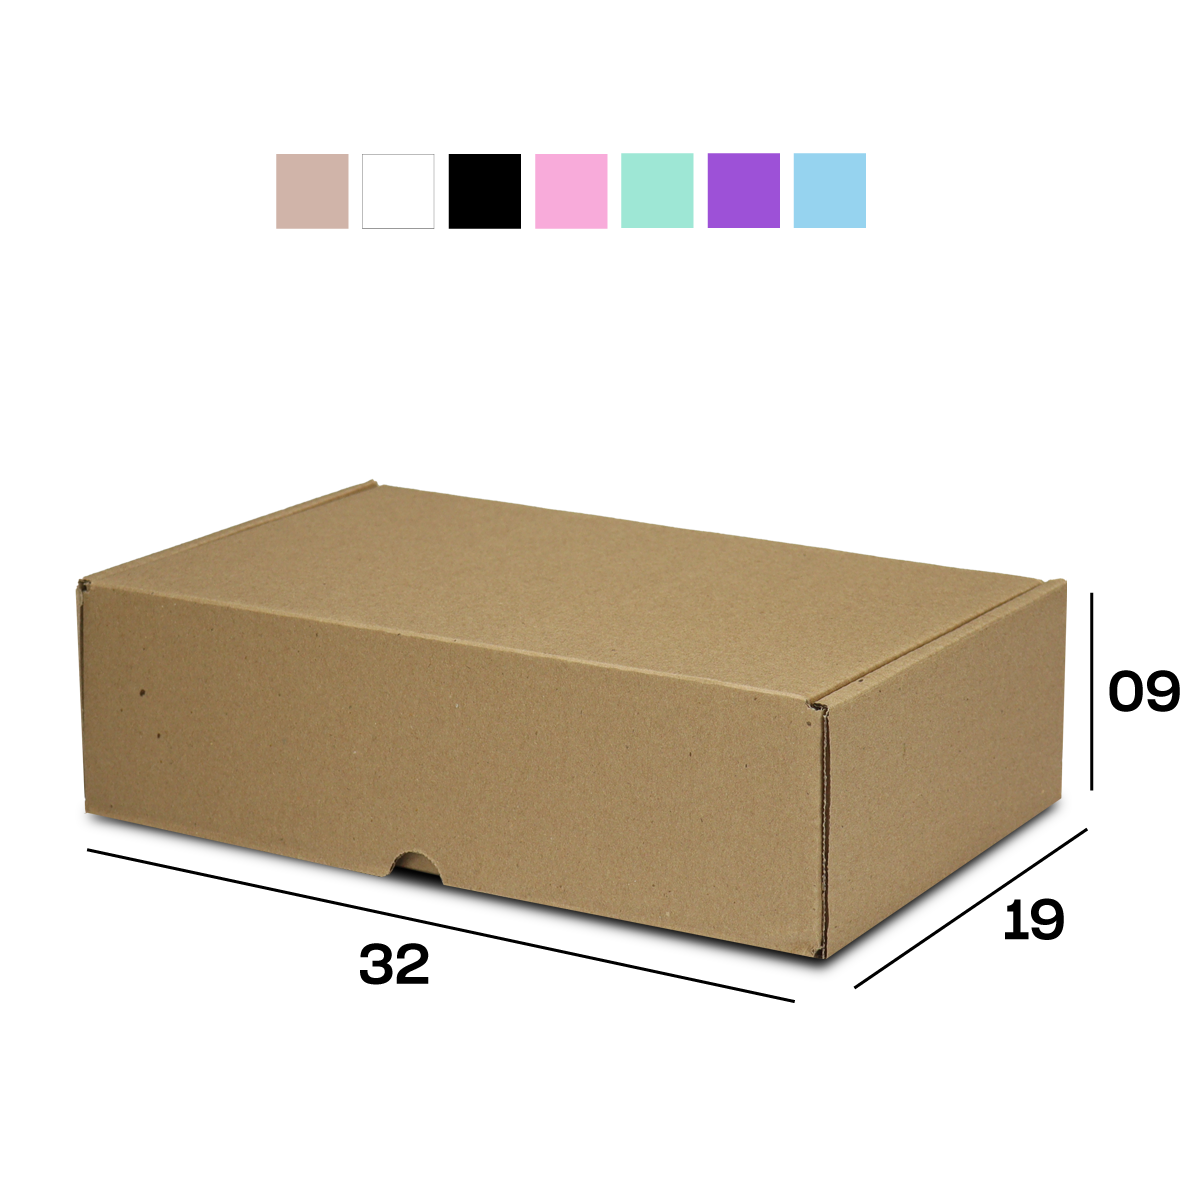 Caixa de Papelão Sedex 07 (32x19x9) Lisa